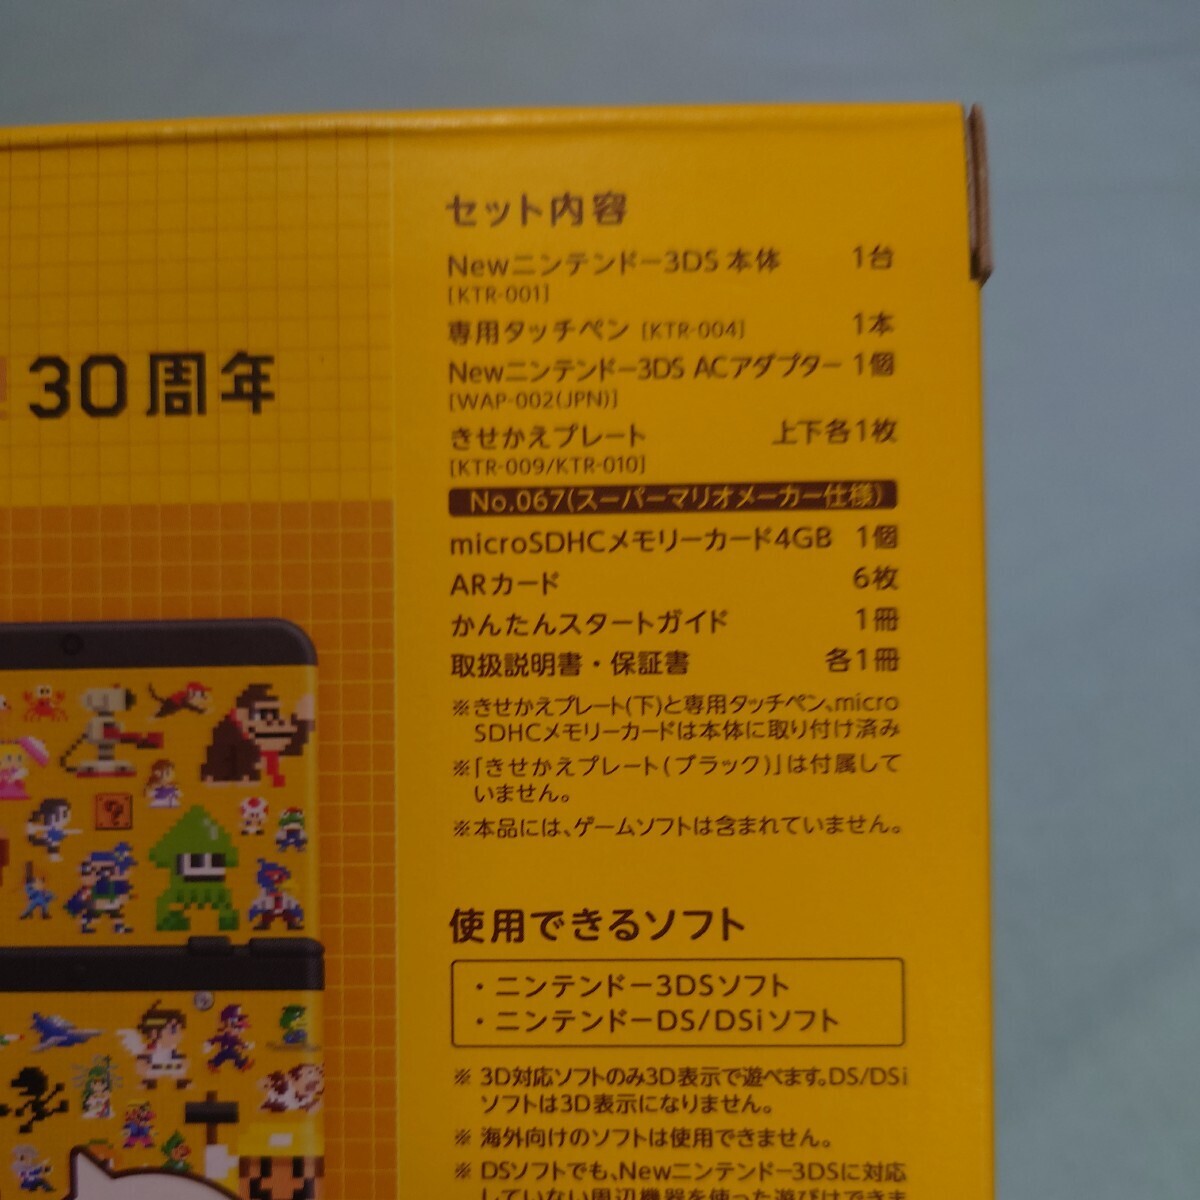 【新品】NEWニンテンドー3DS スーパーマリオメーカーデザインきせかえプレートパックの画像3